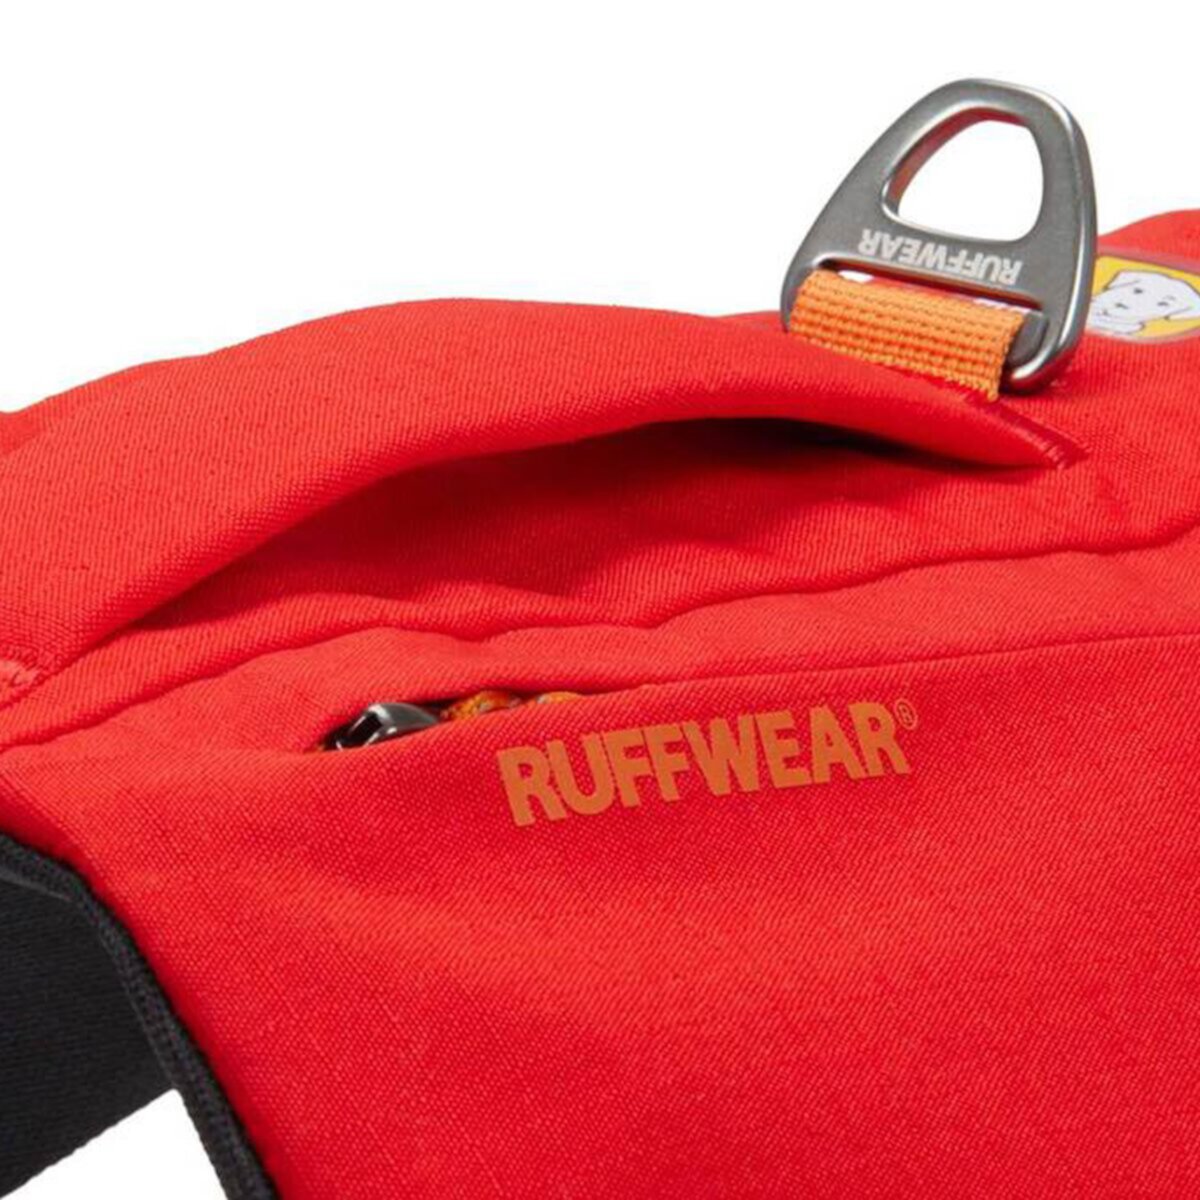 Ремень Ruffwear Switchbak Ruffwear